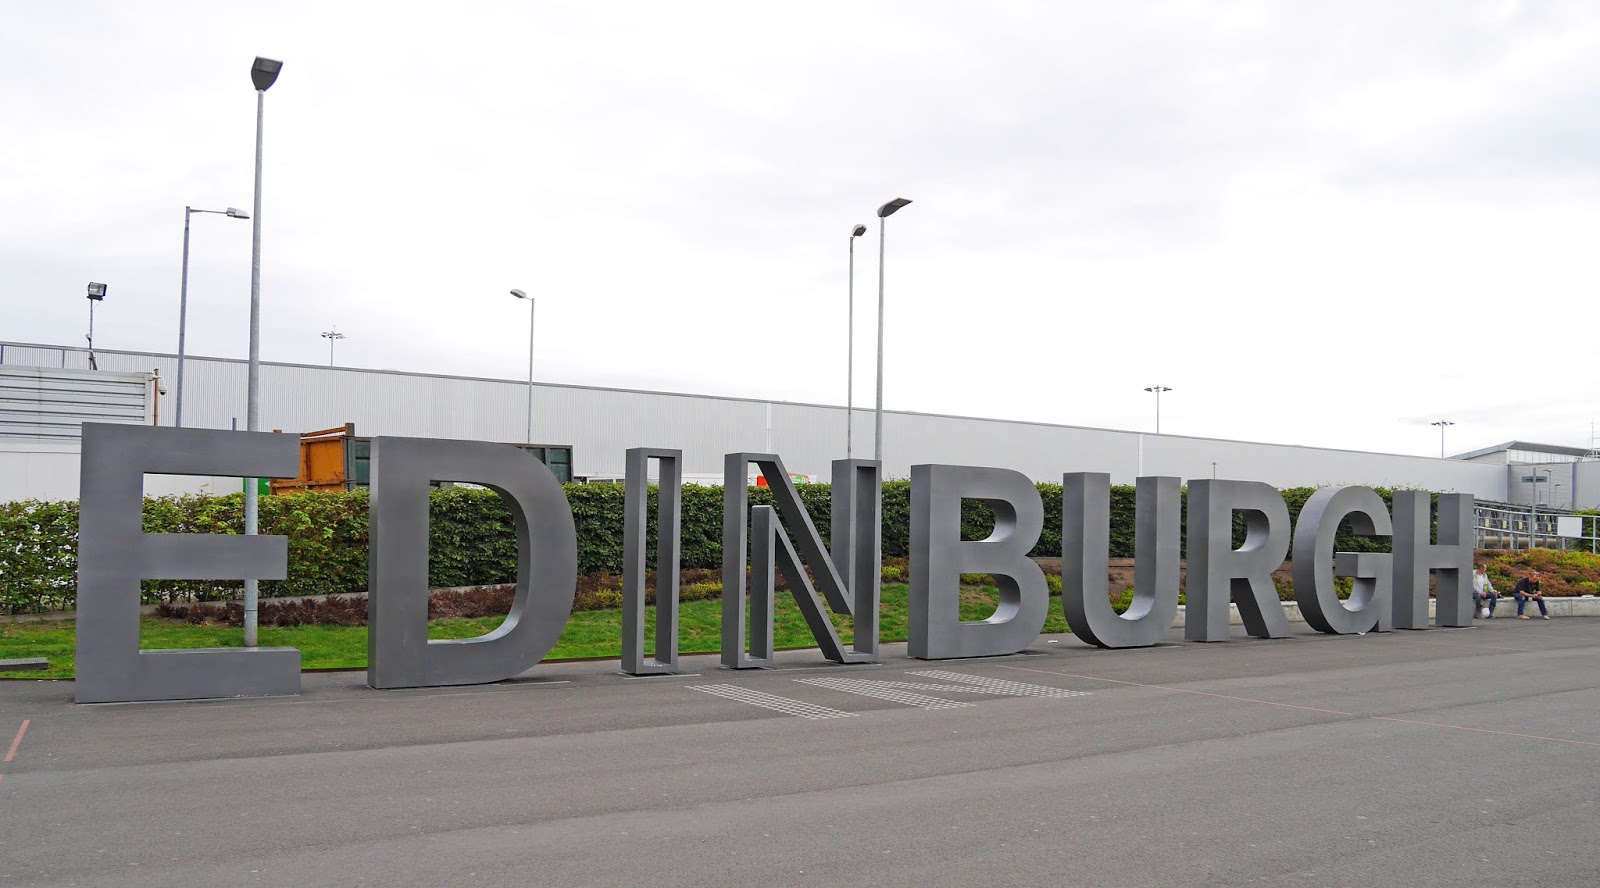 Edinburgh sign at Edinburgh Airport